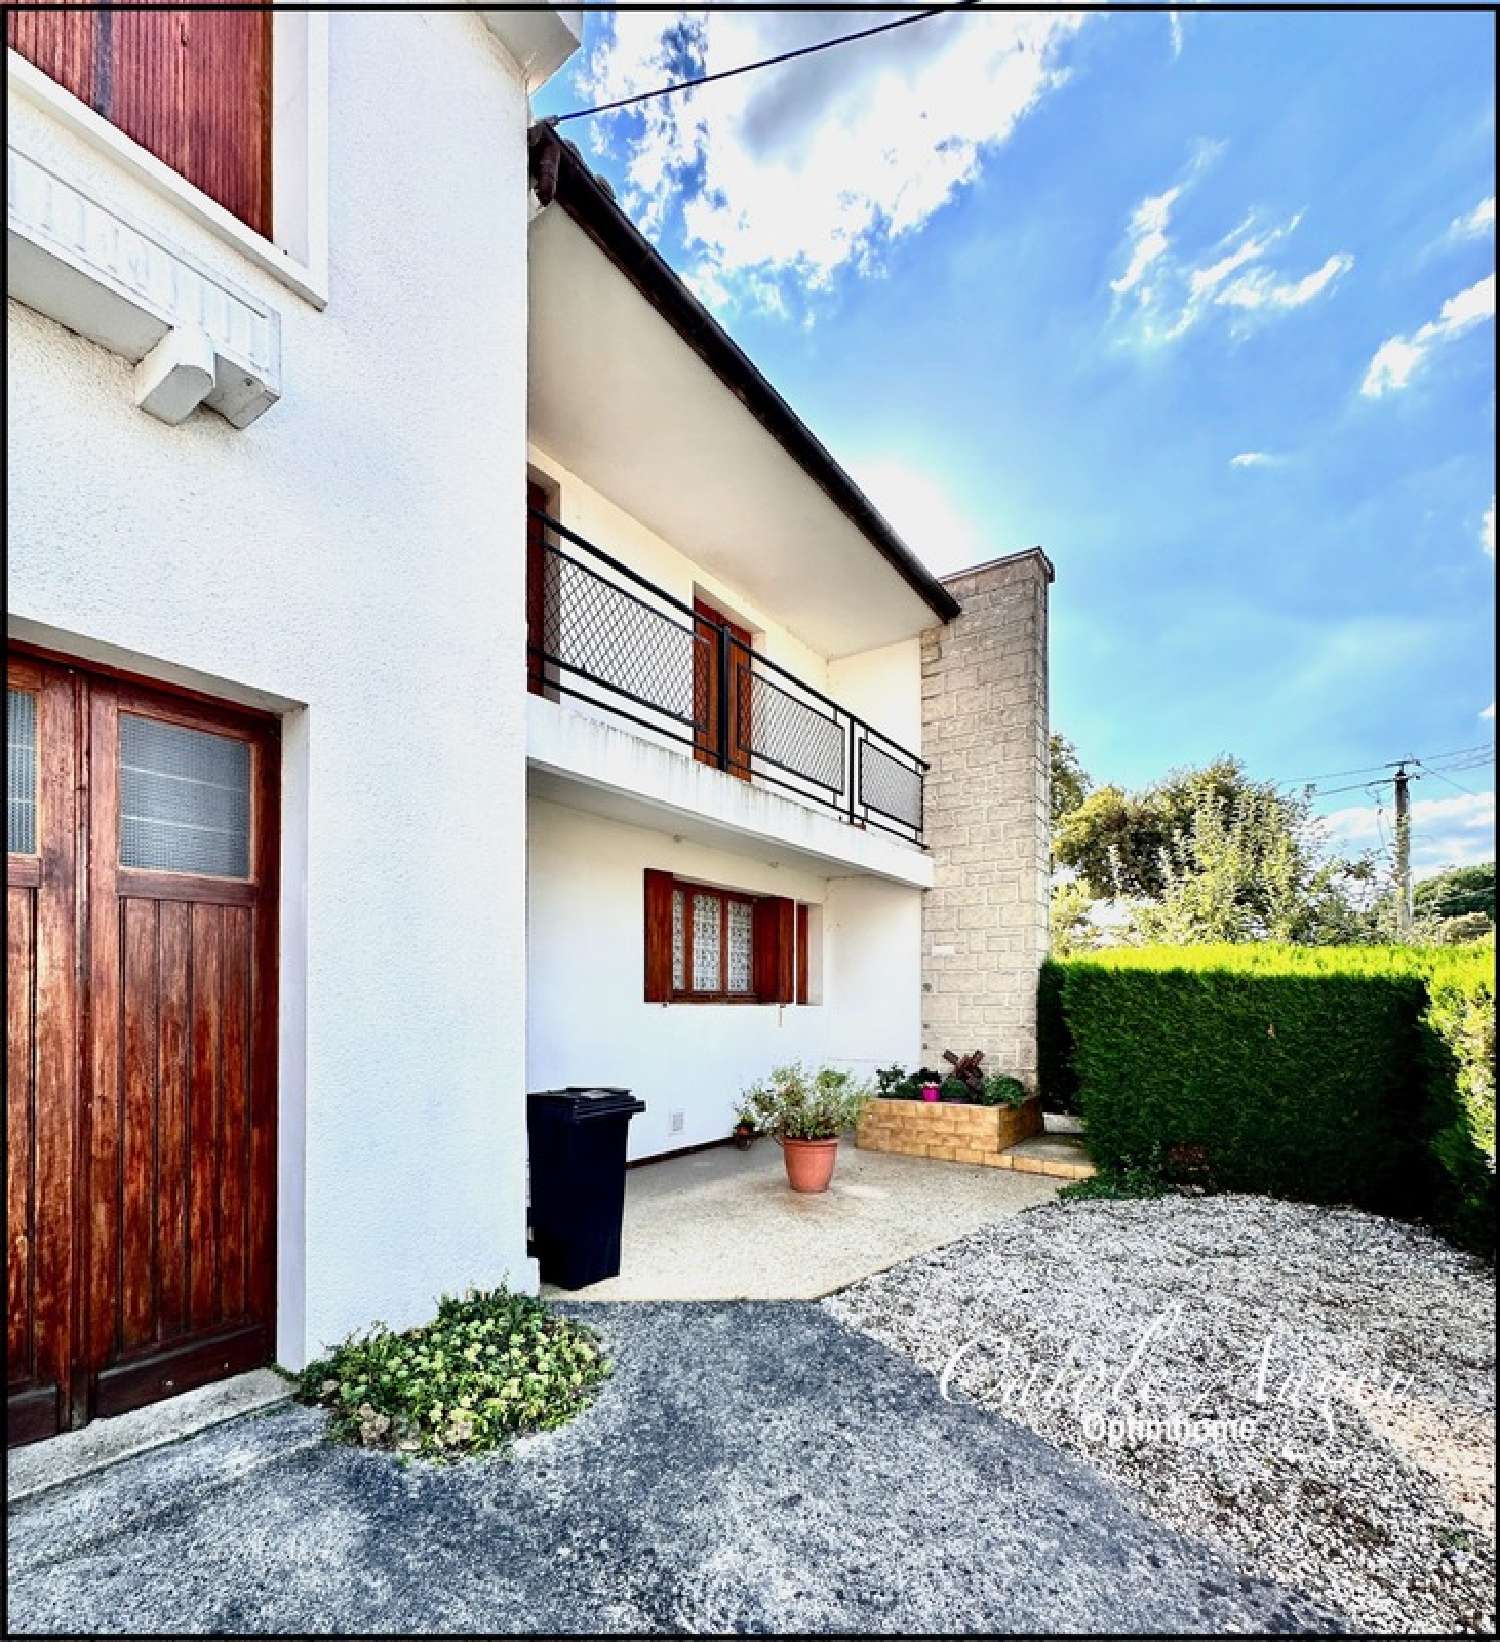  for sale house Villenave-d'Ornon Gironde 1